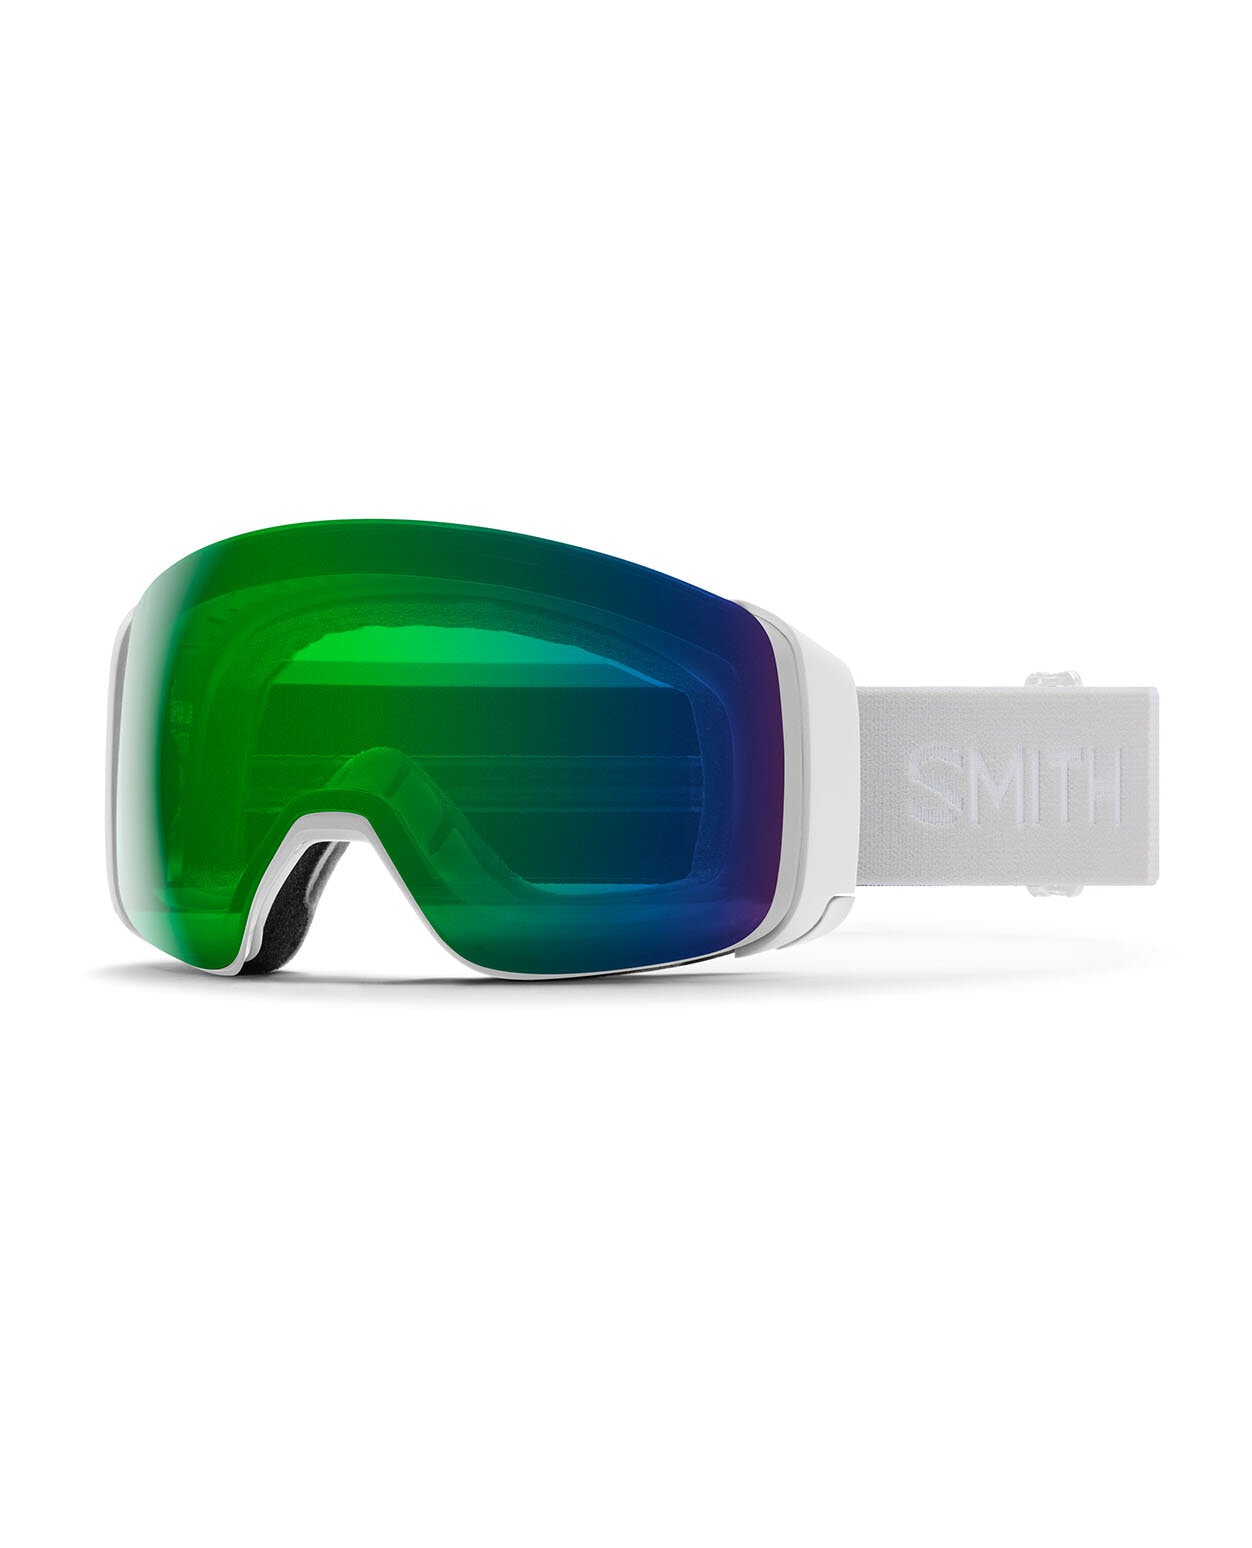 Smith 4D Mag White Vapor/ChromaPop Everyday Green Mirror +extra